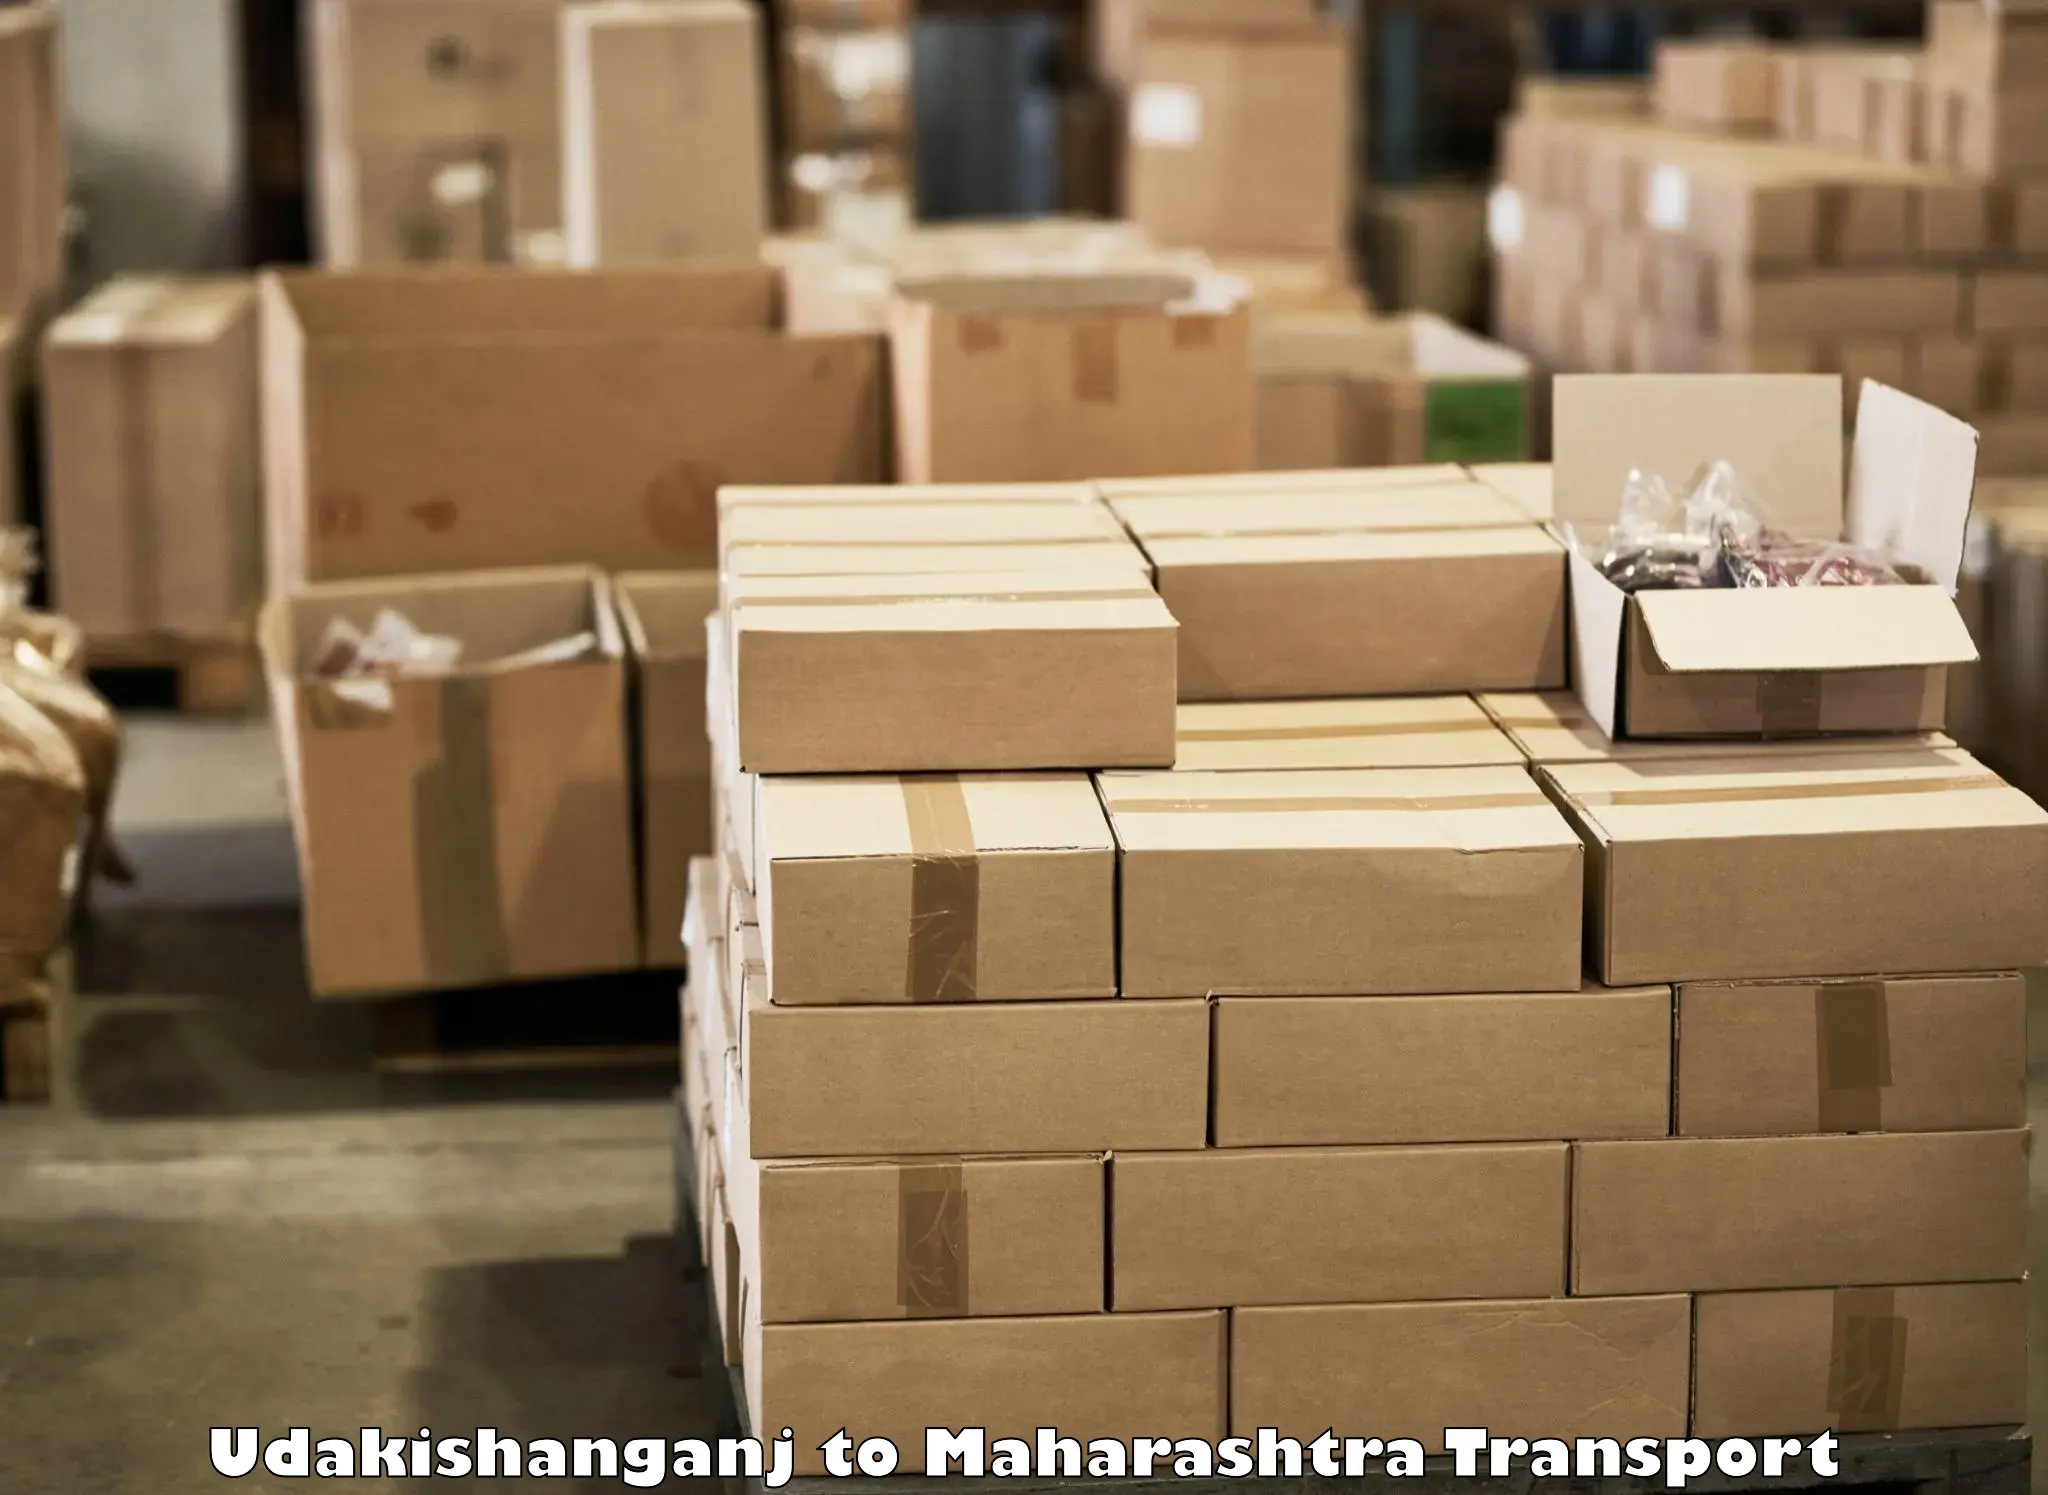 Goods transport services Udakishanganj to Chandwad